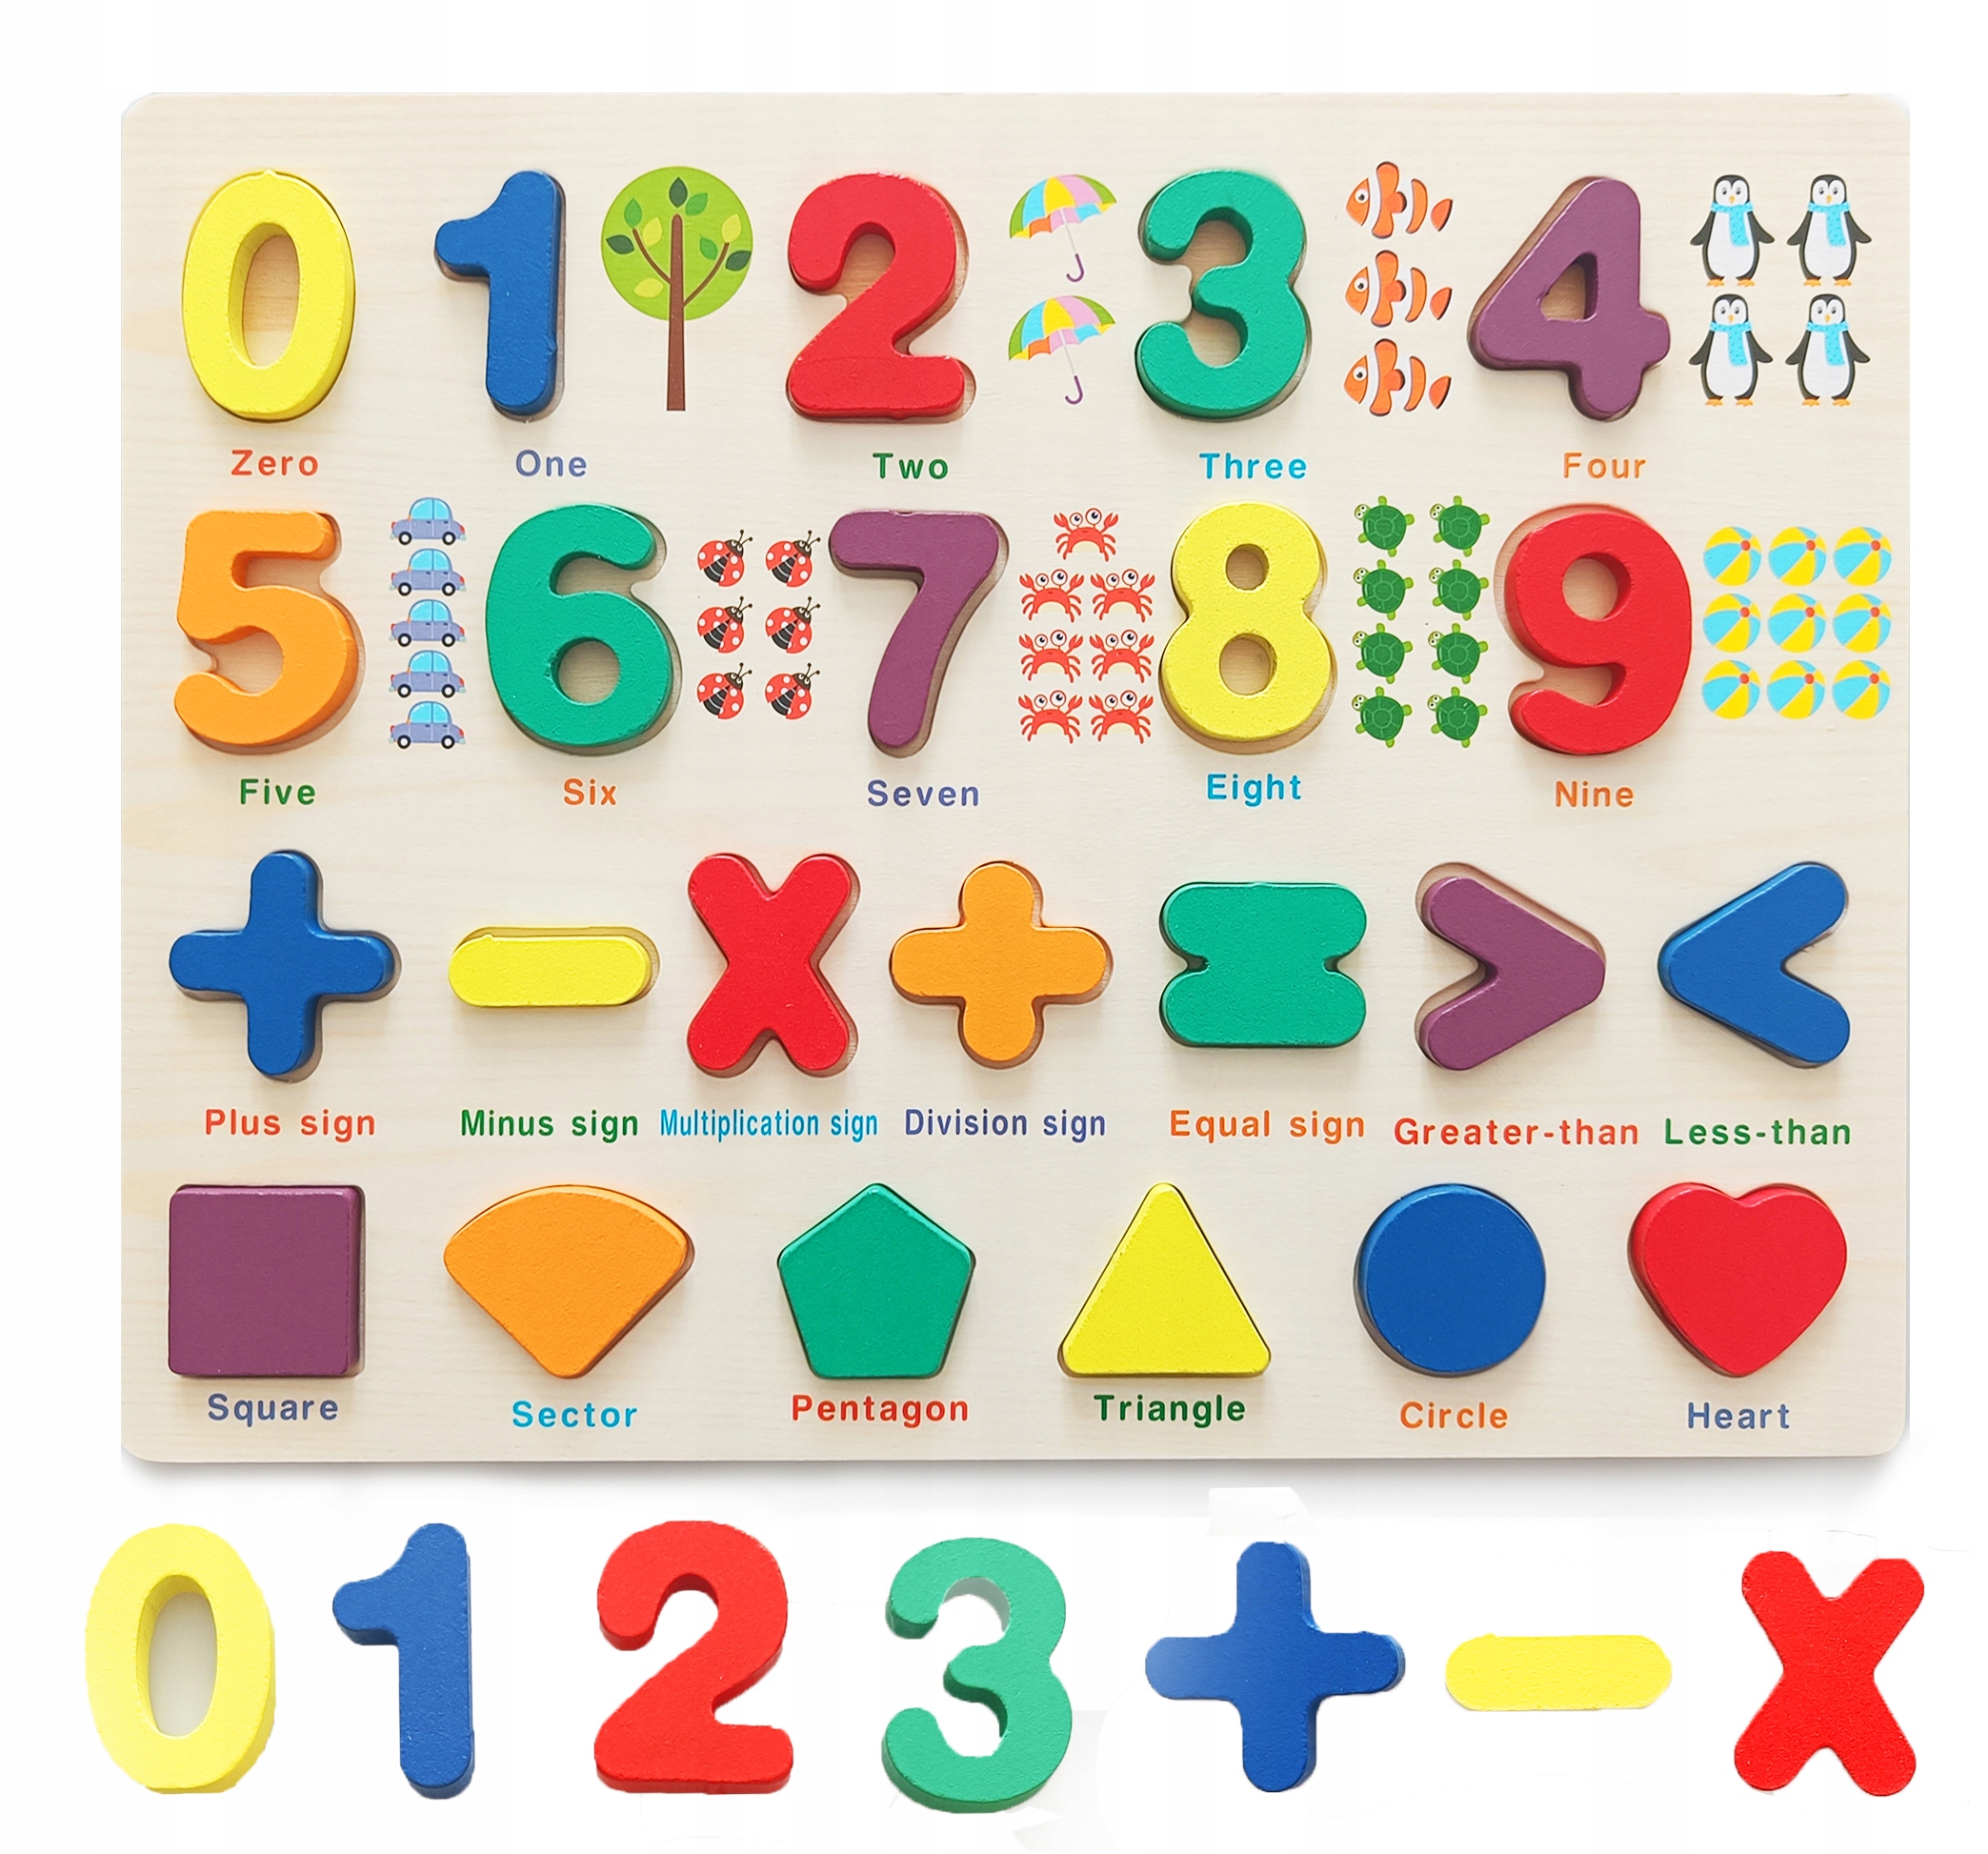 Skladačka čísla učenie počítanie drevená Montessori vzdelávacia tabuľa